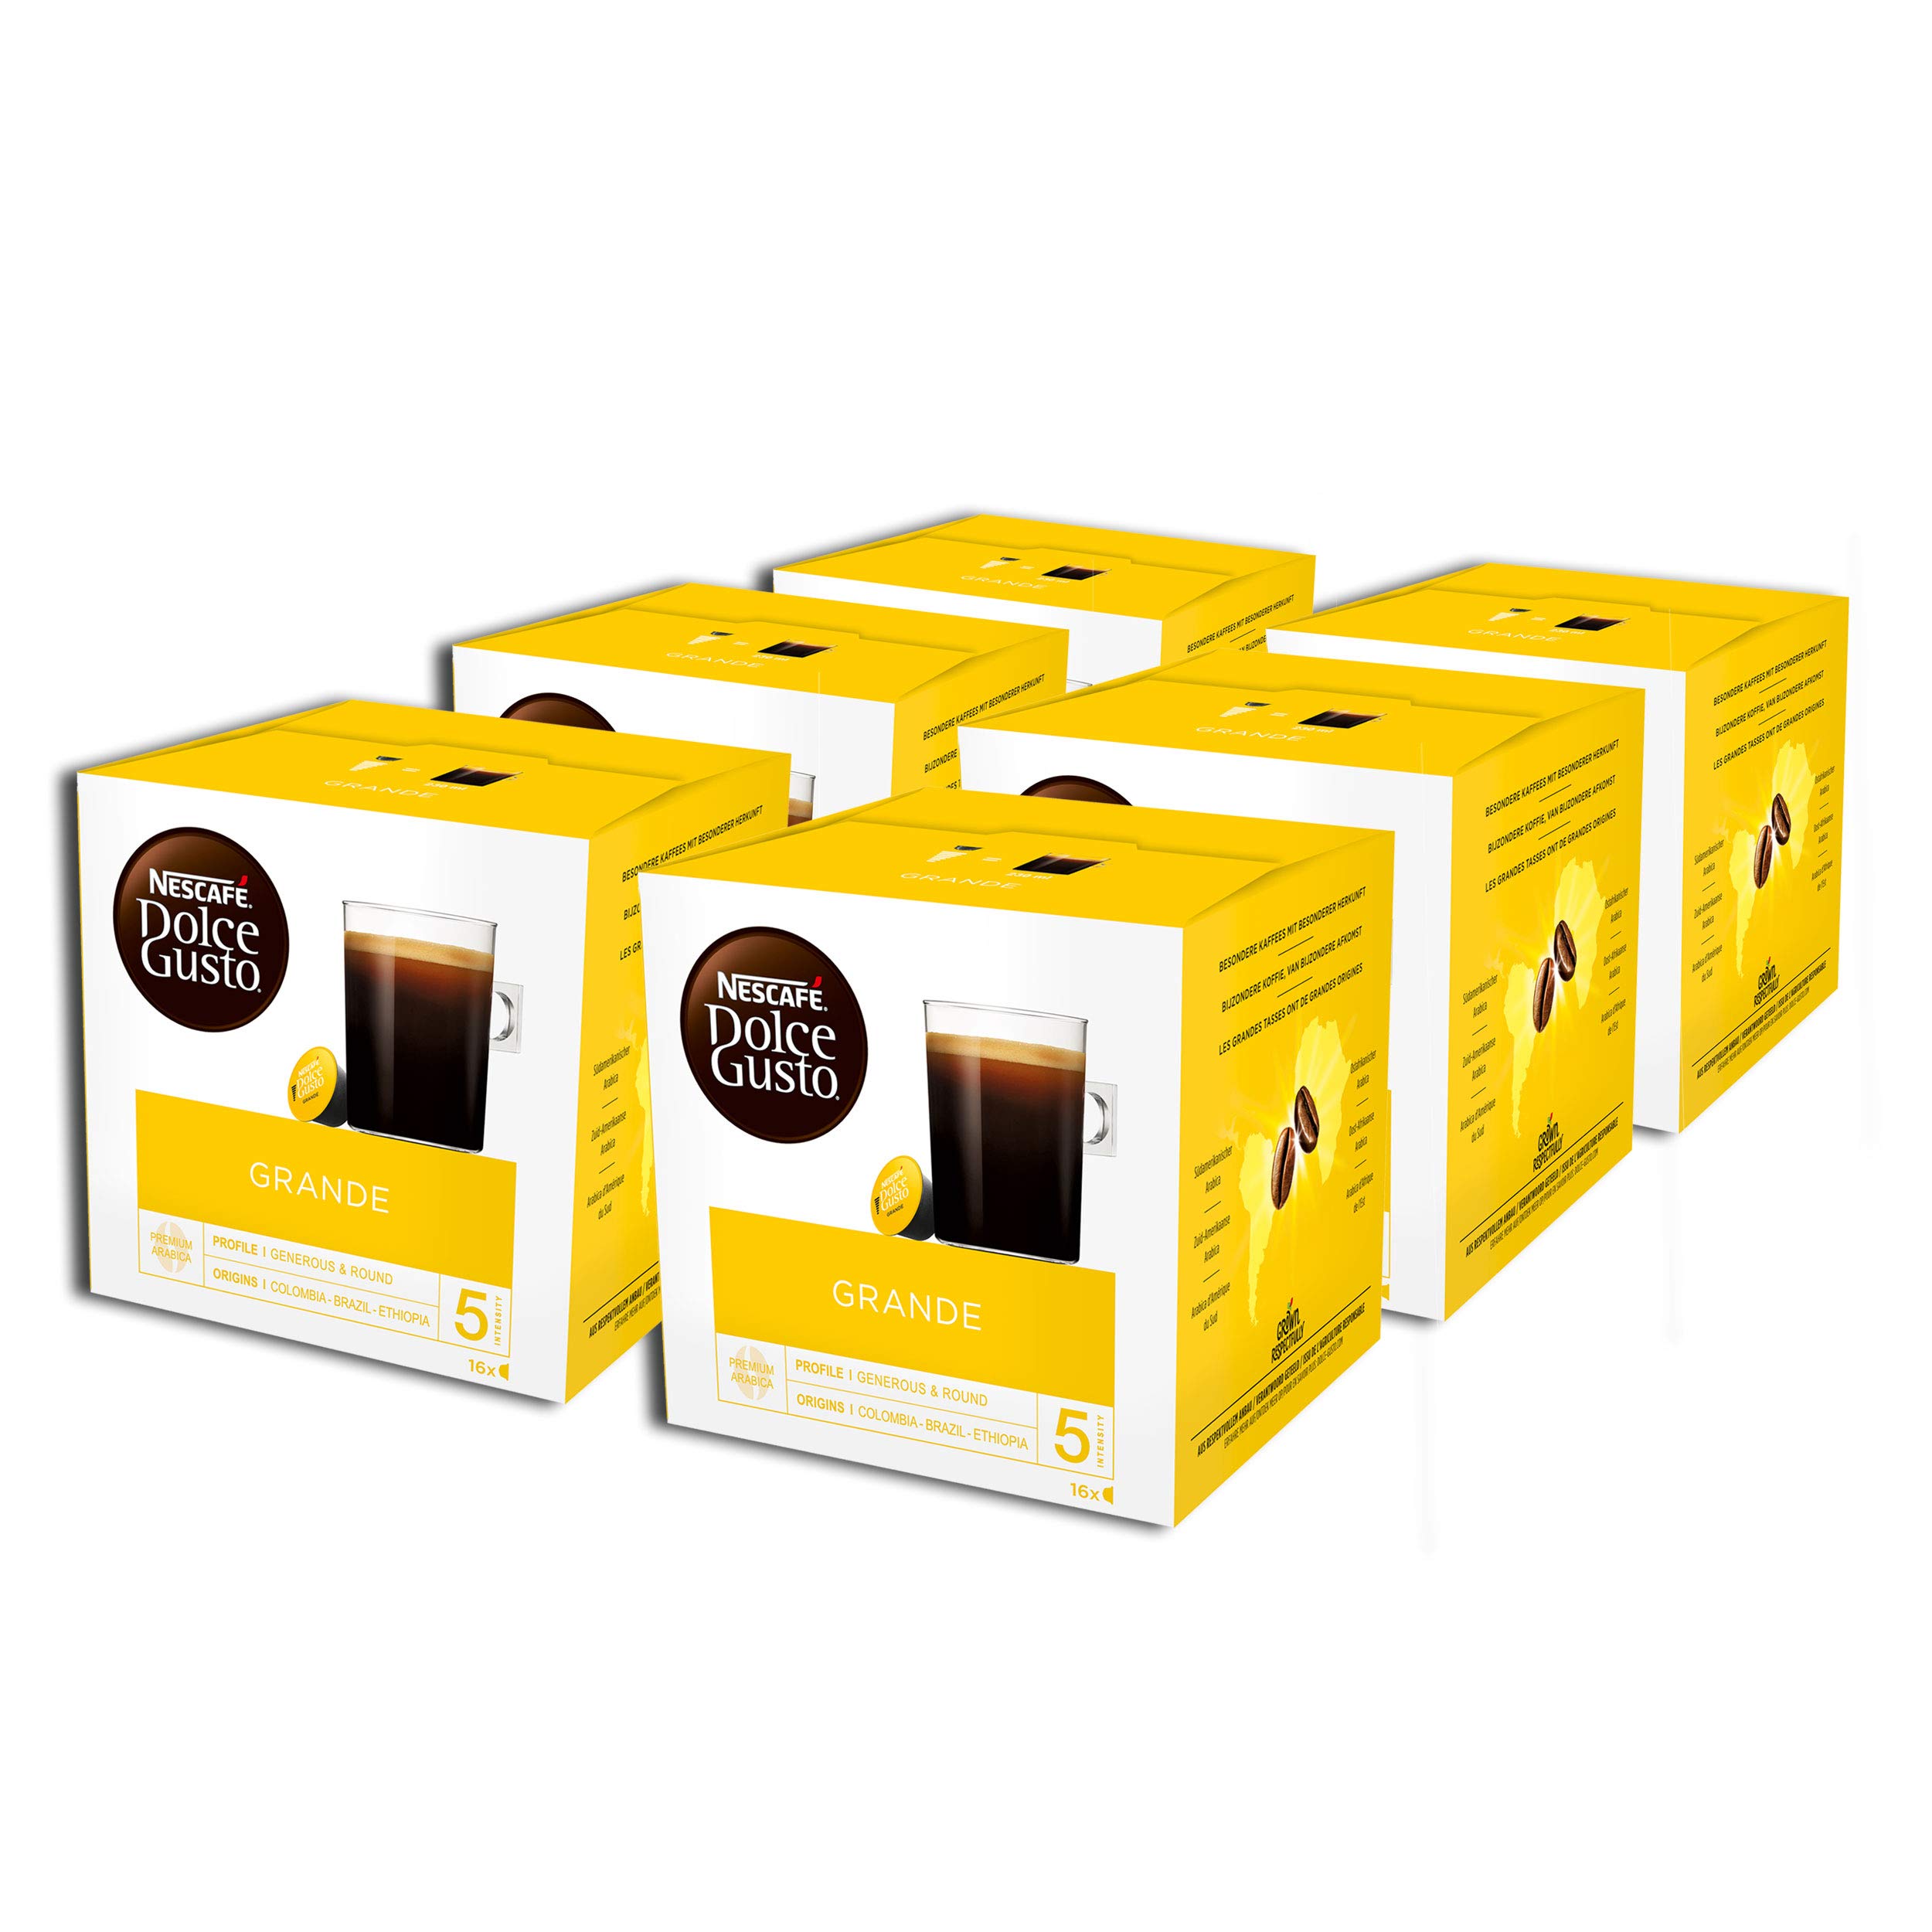 NESCAFÉ Dolce Gusto Grande Kaffee, 96 Kaffeekapseln, 100% Arabica Bohnen, Feine Crema und kräftiges Aroma, Schnelle Zubereitung, Aromaversiegelte Kapseln, 6er Pack (6x16 Kapseln)